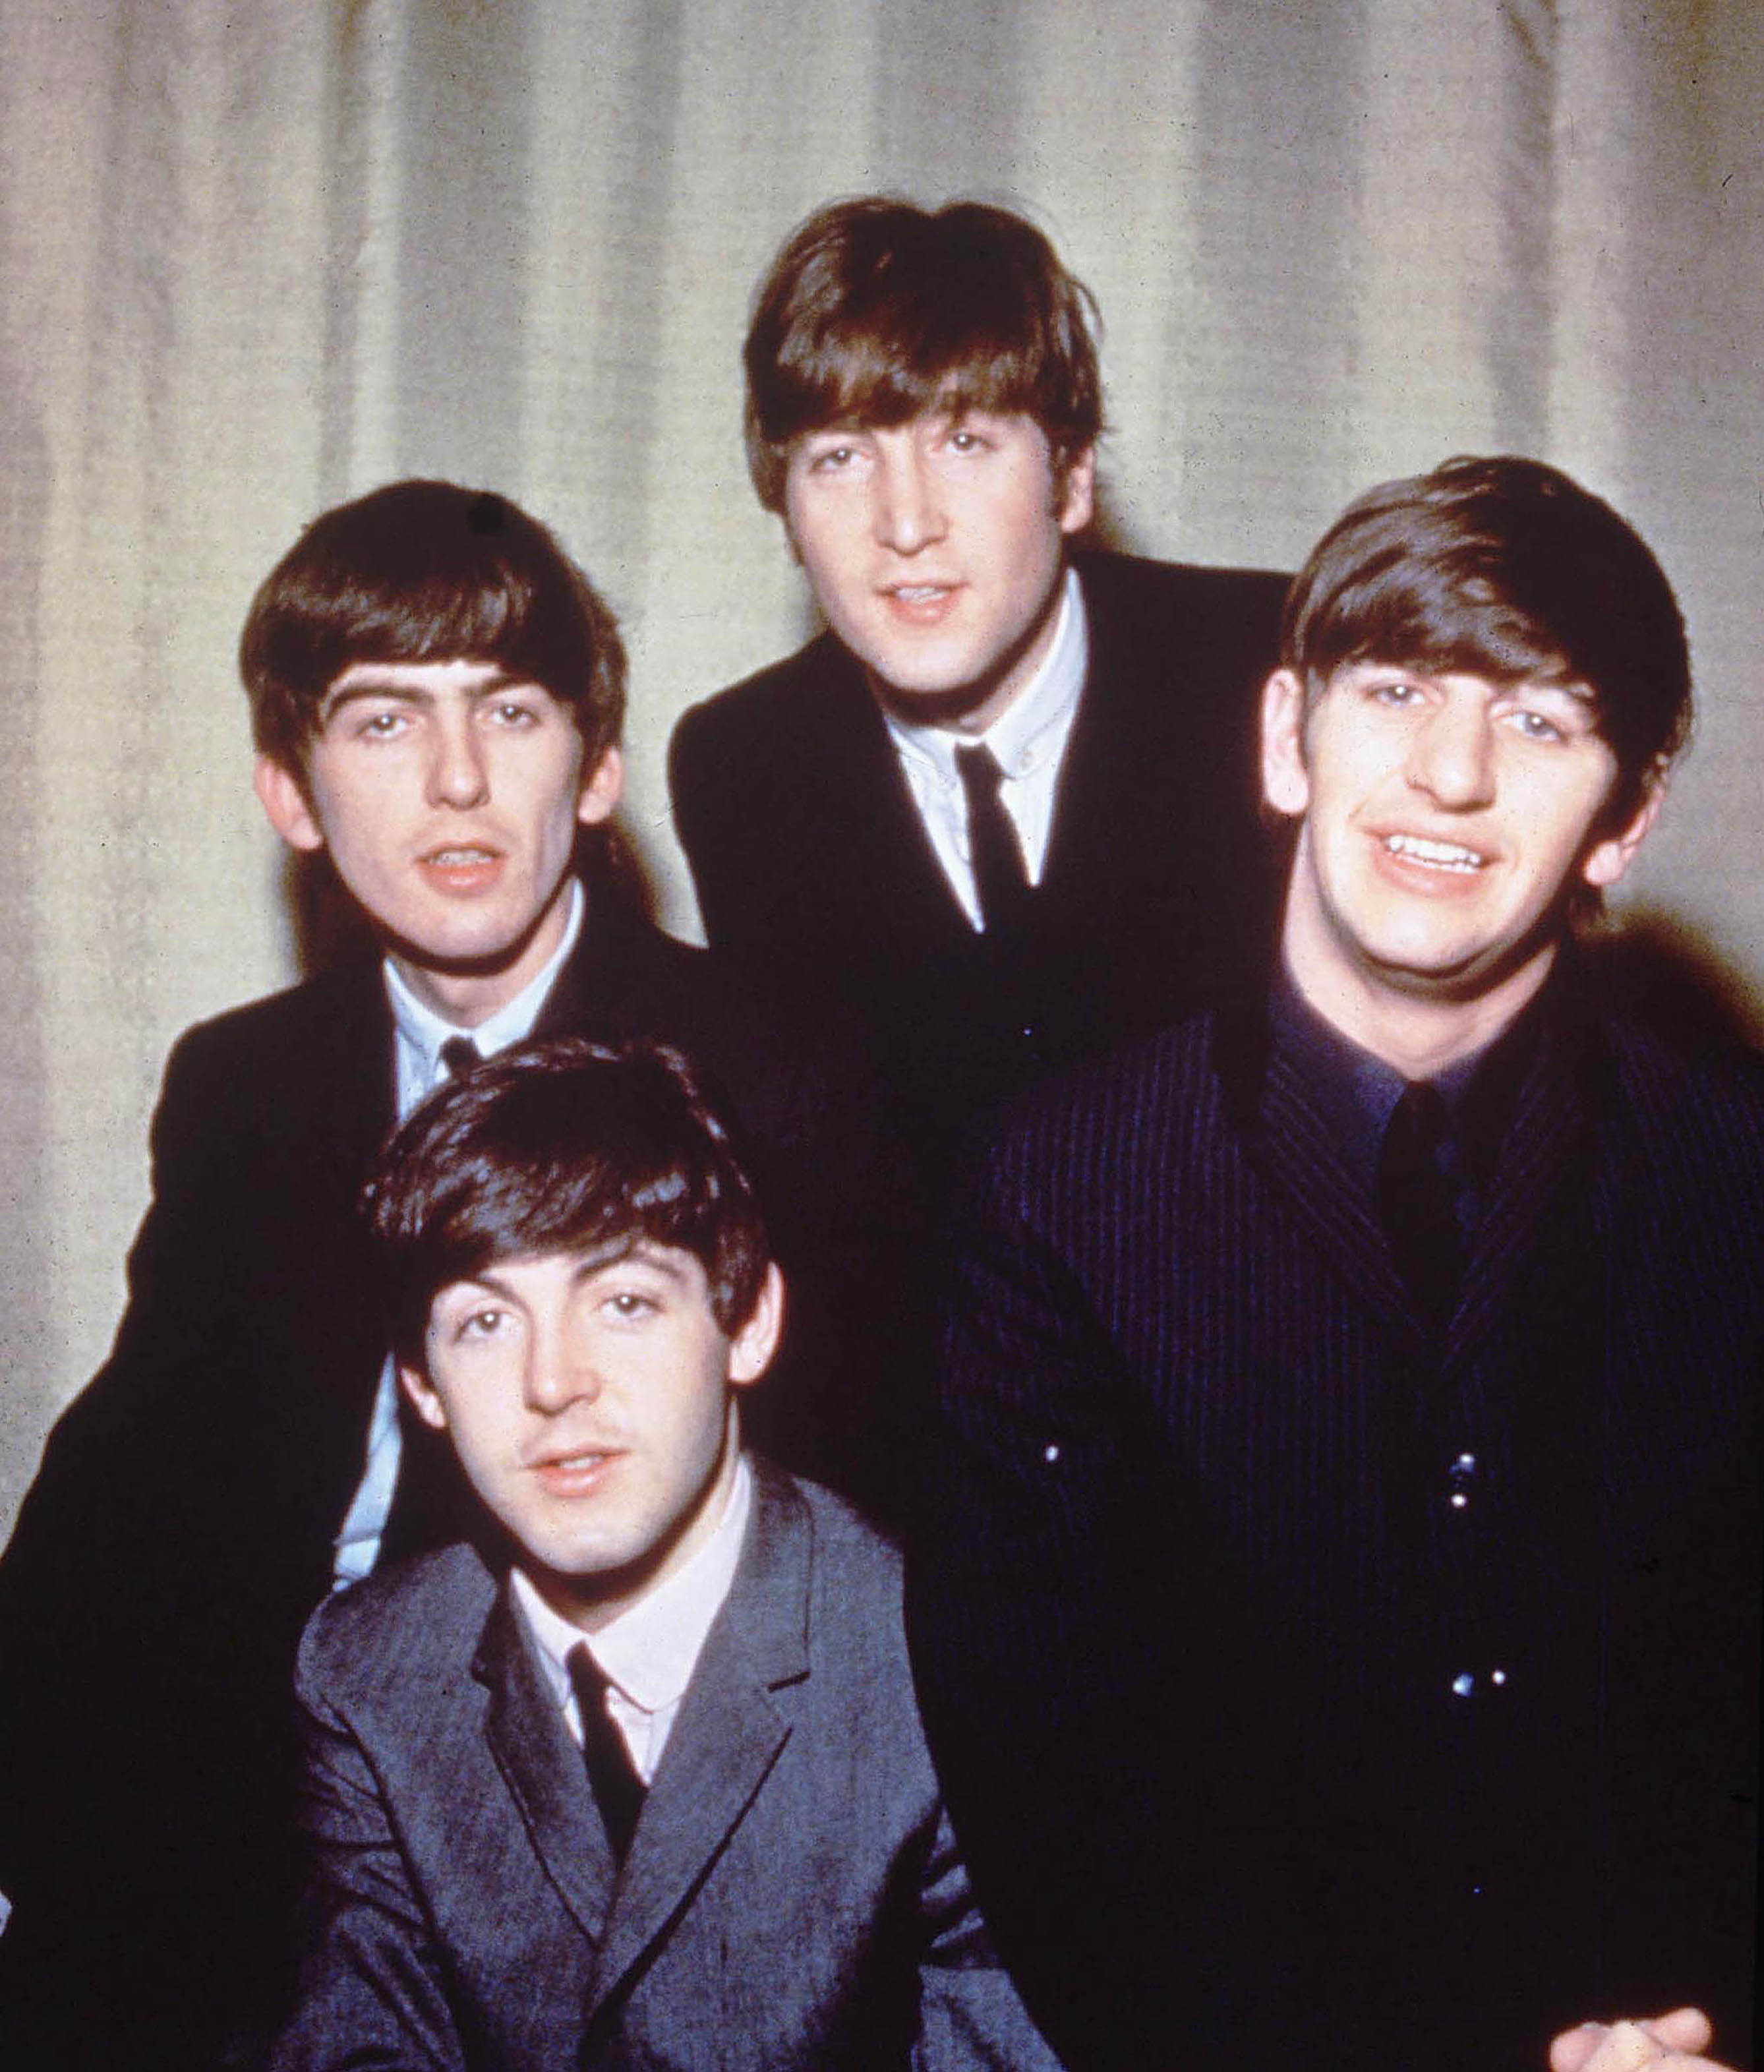 John Lennon sa 1966, att Beatles var större och kändare än Jesus. Det fick katoliker att rasa världen över.